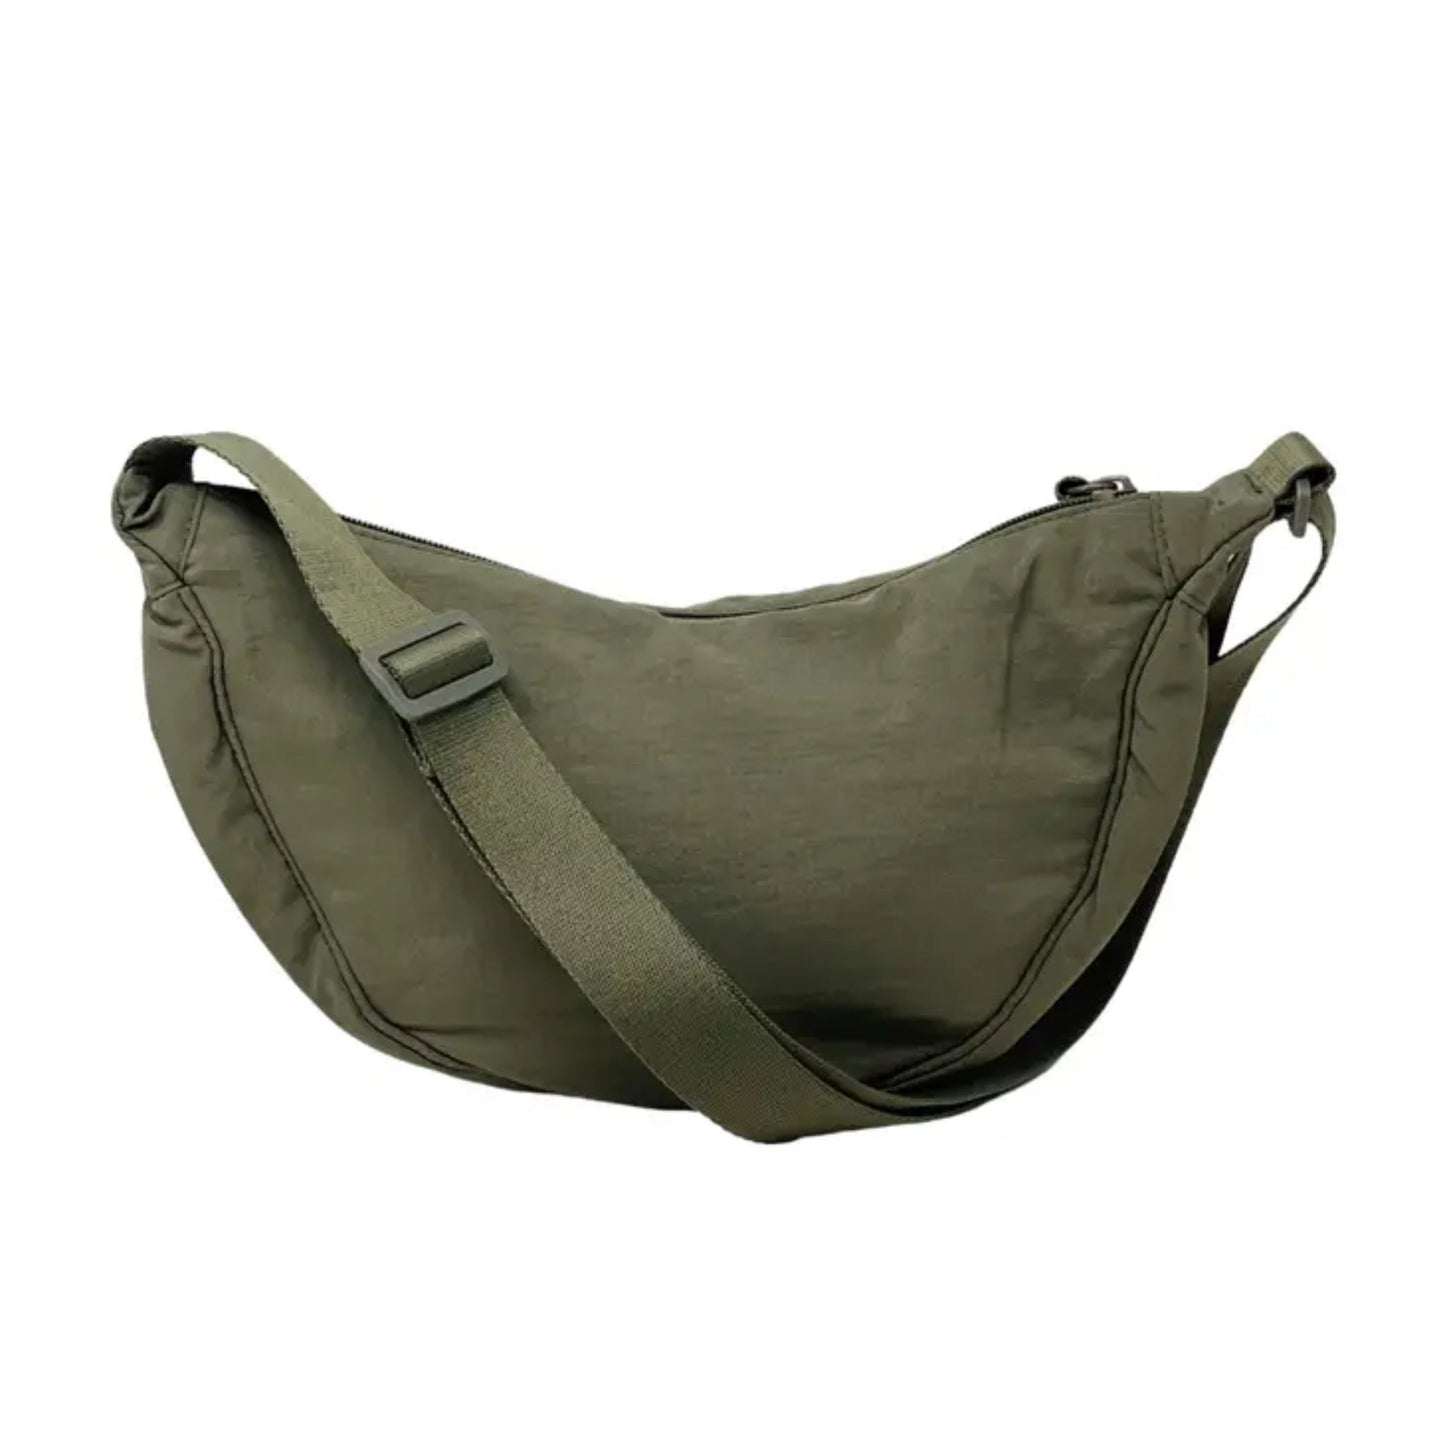 Cross body sling bag khaki green